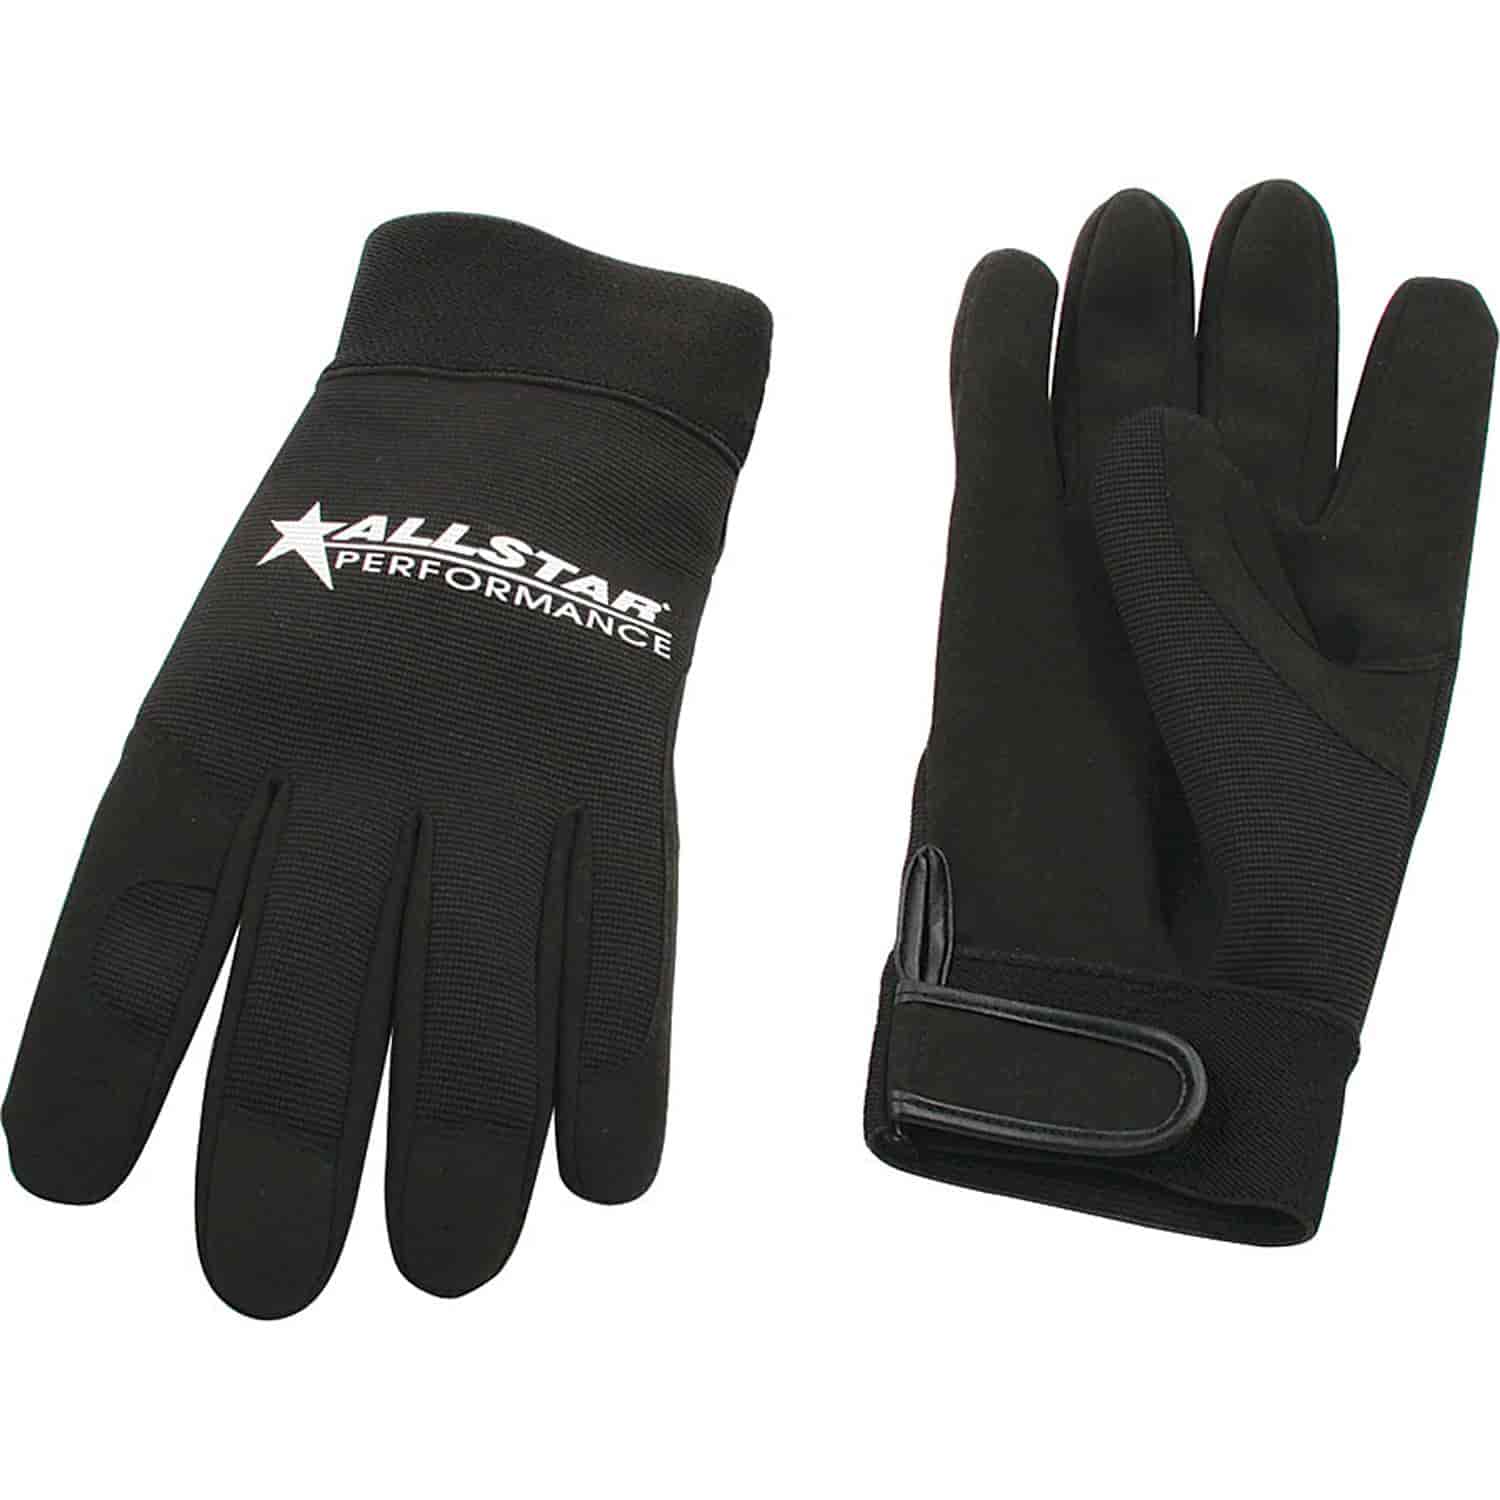 Allstar Work Gloves Black